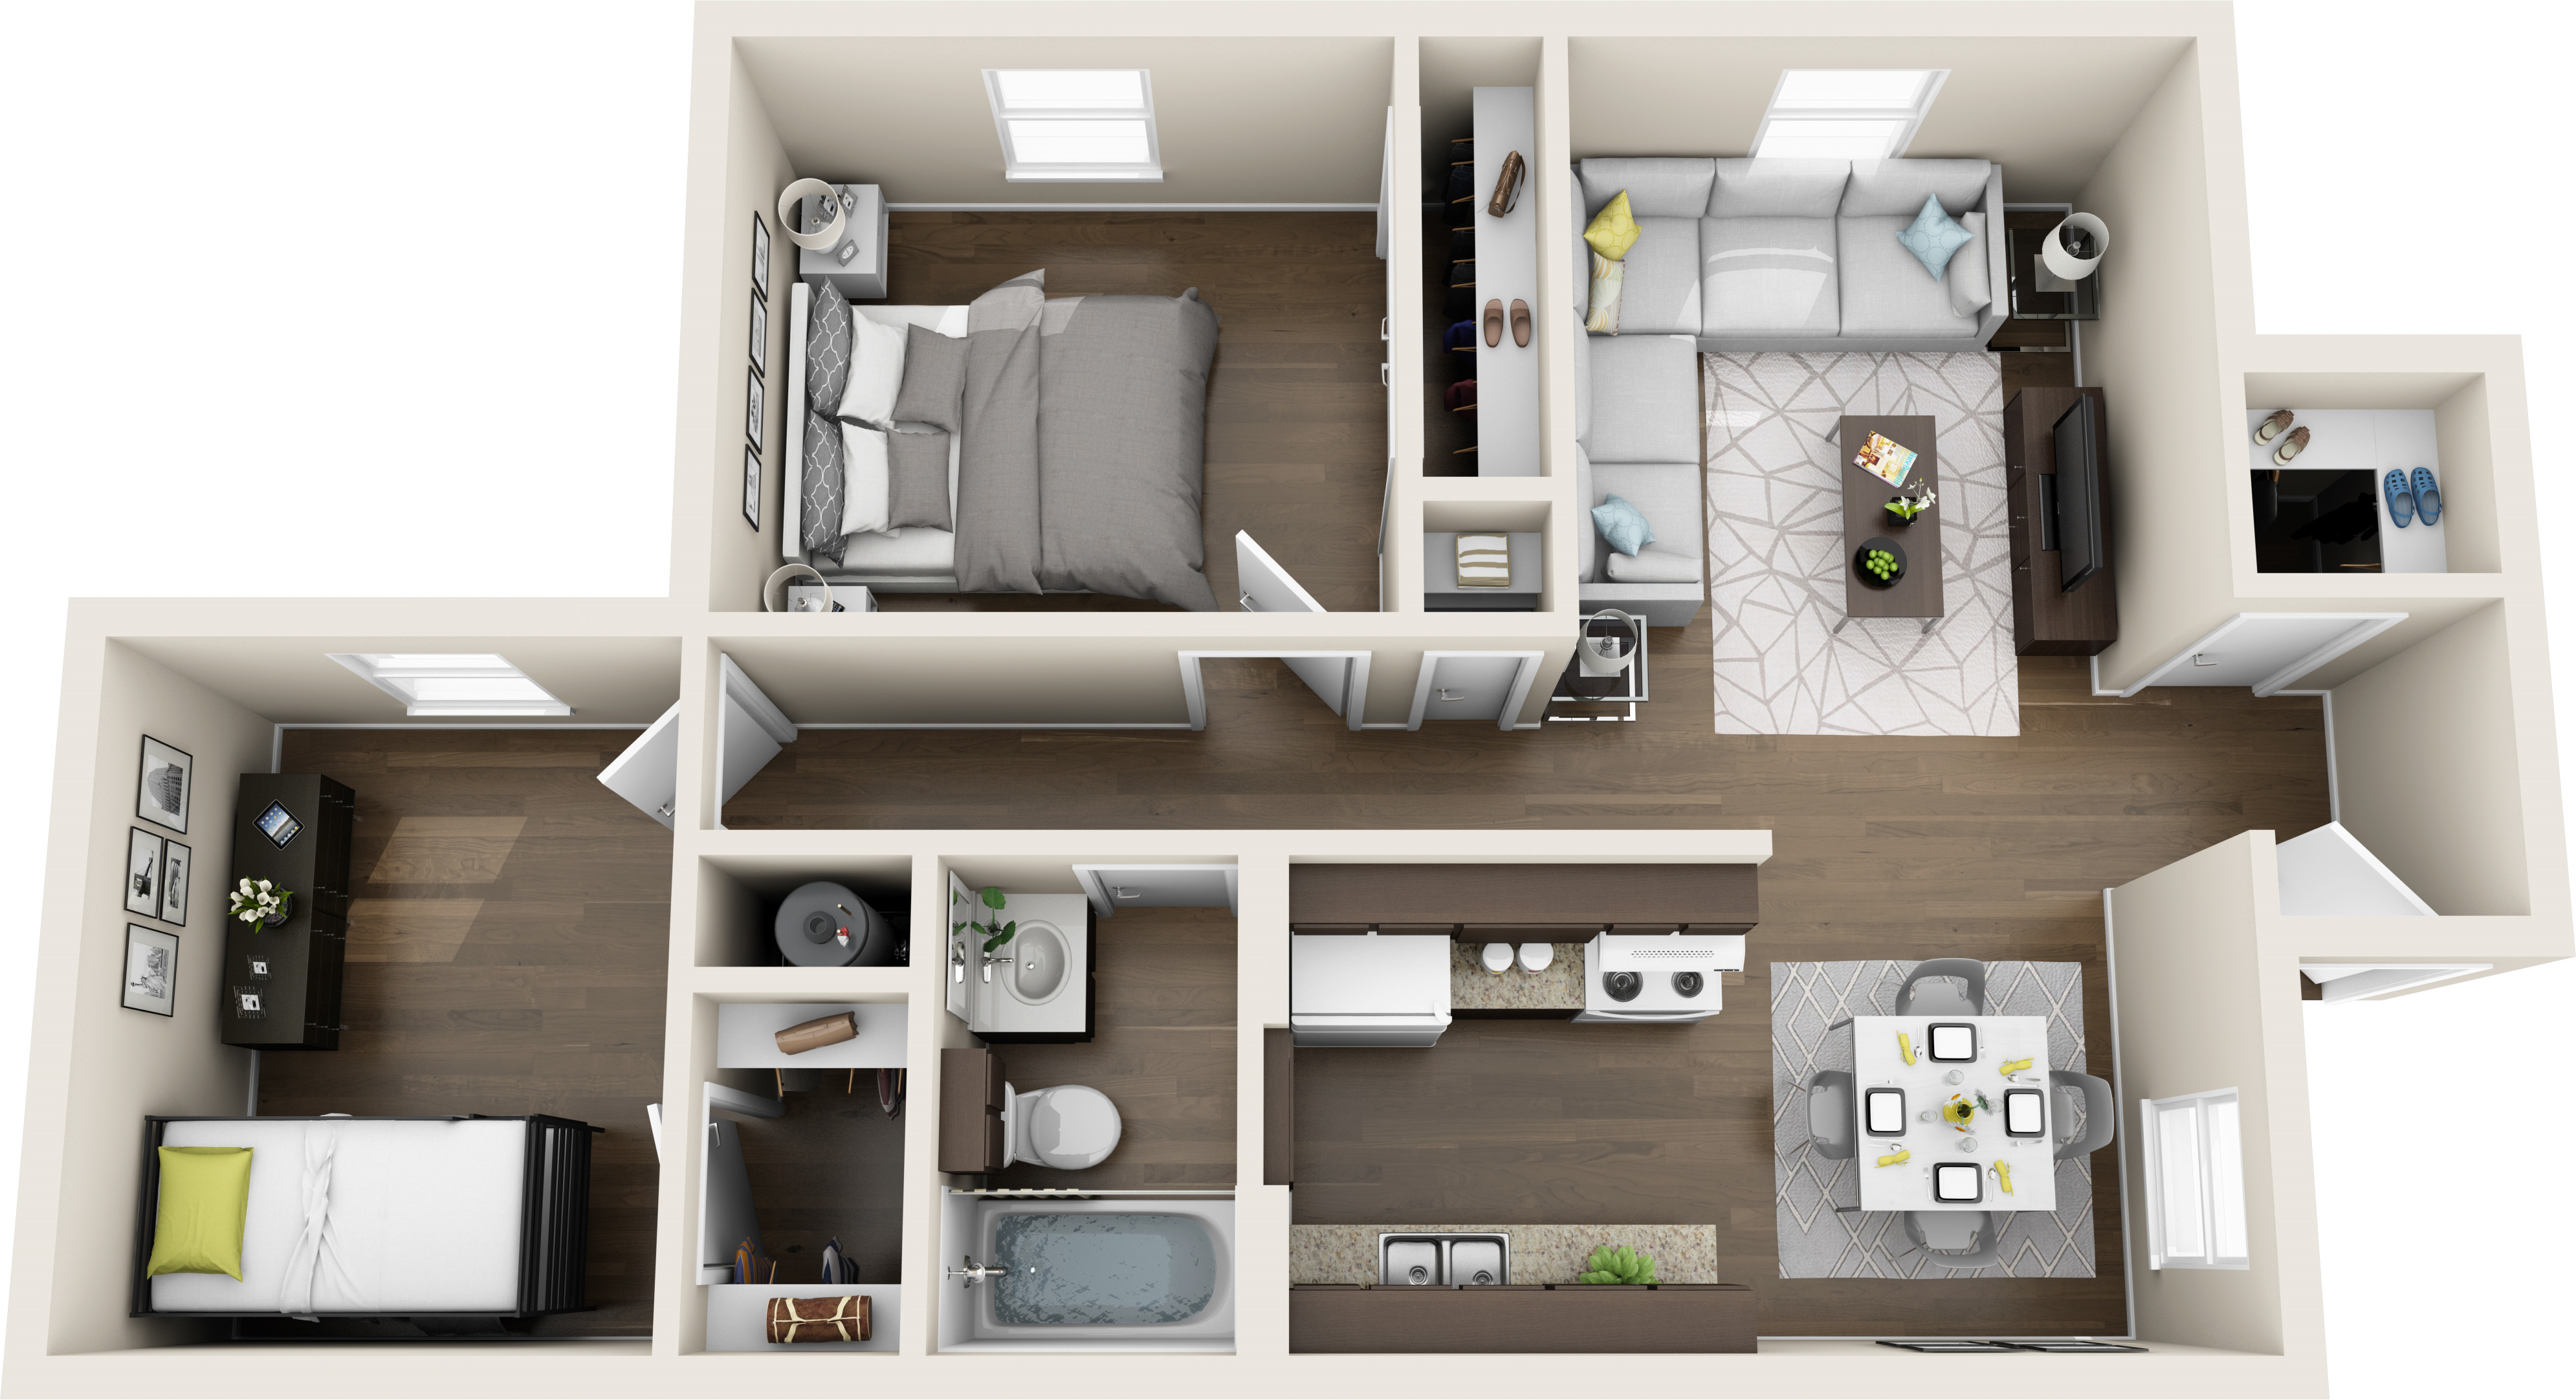 3D floor plan 2 bedroom.png